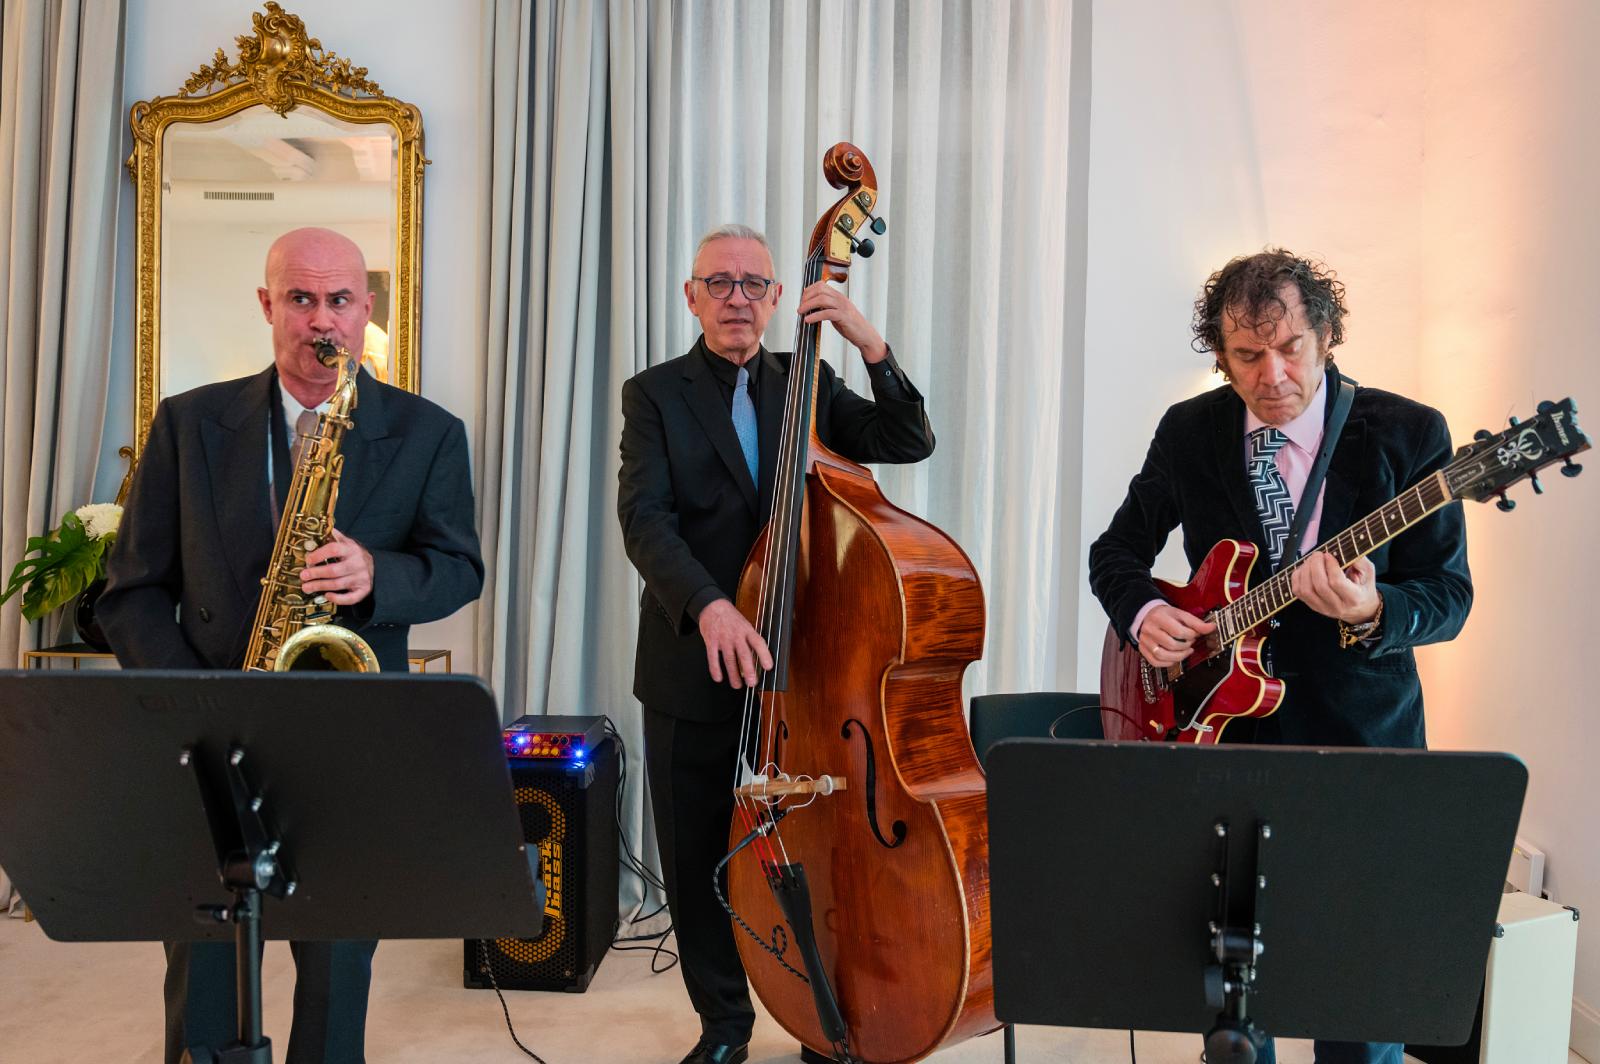 El grupo de jazz que amenizó el cóctel:
Alejandro Pérez (saxofón), Chema Saiz (guitarra) y Richie Ferrer (contrabajo).

 - imagen 15